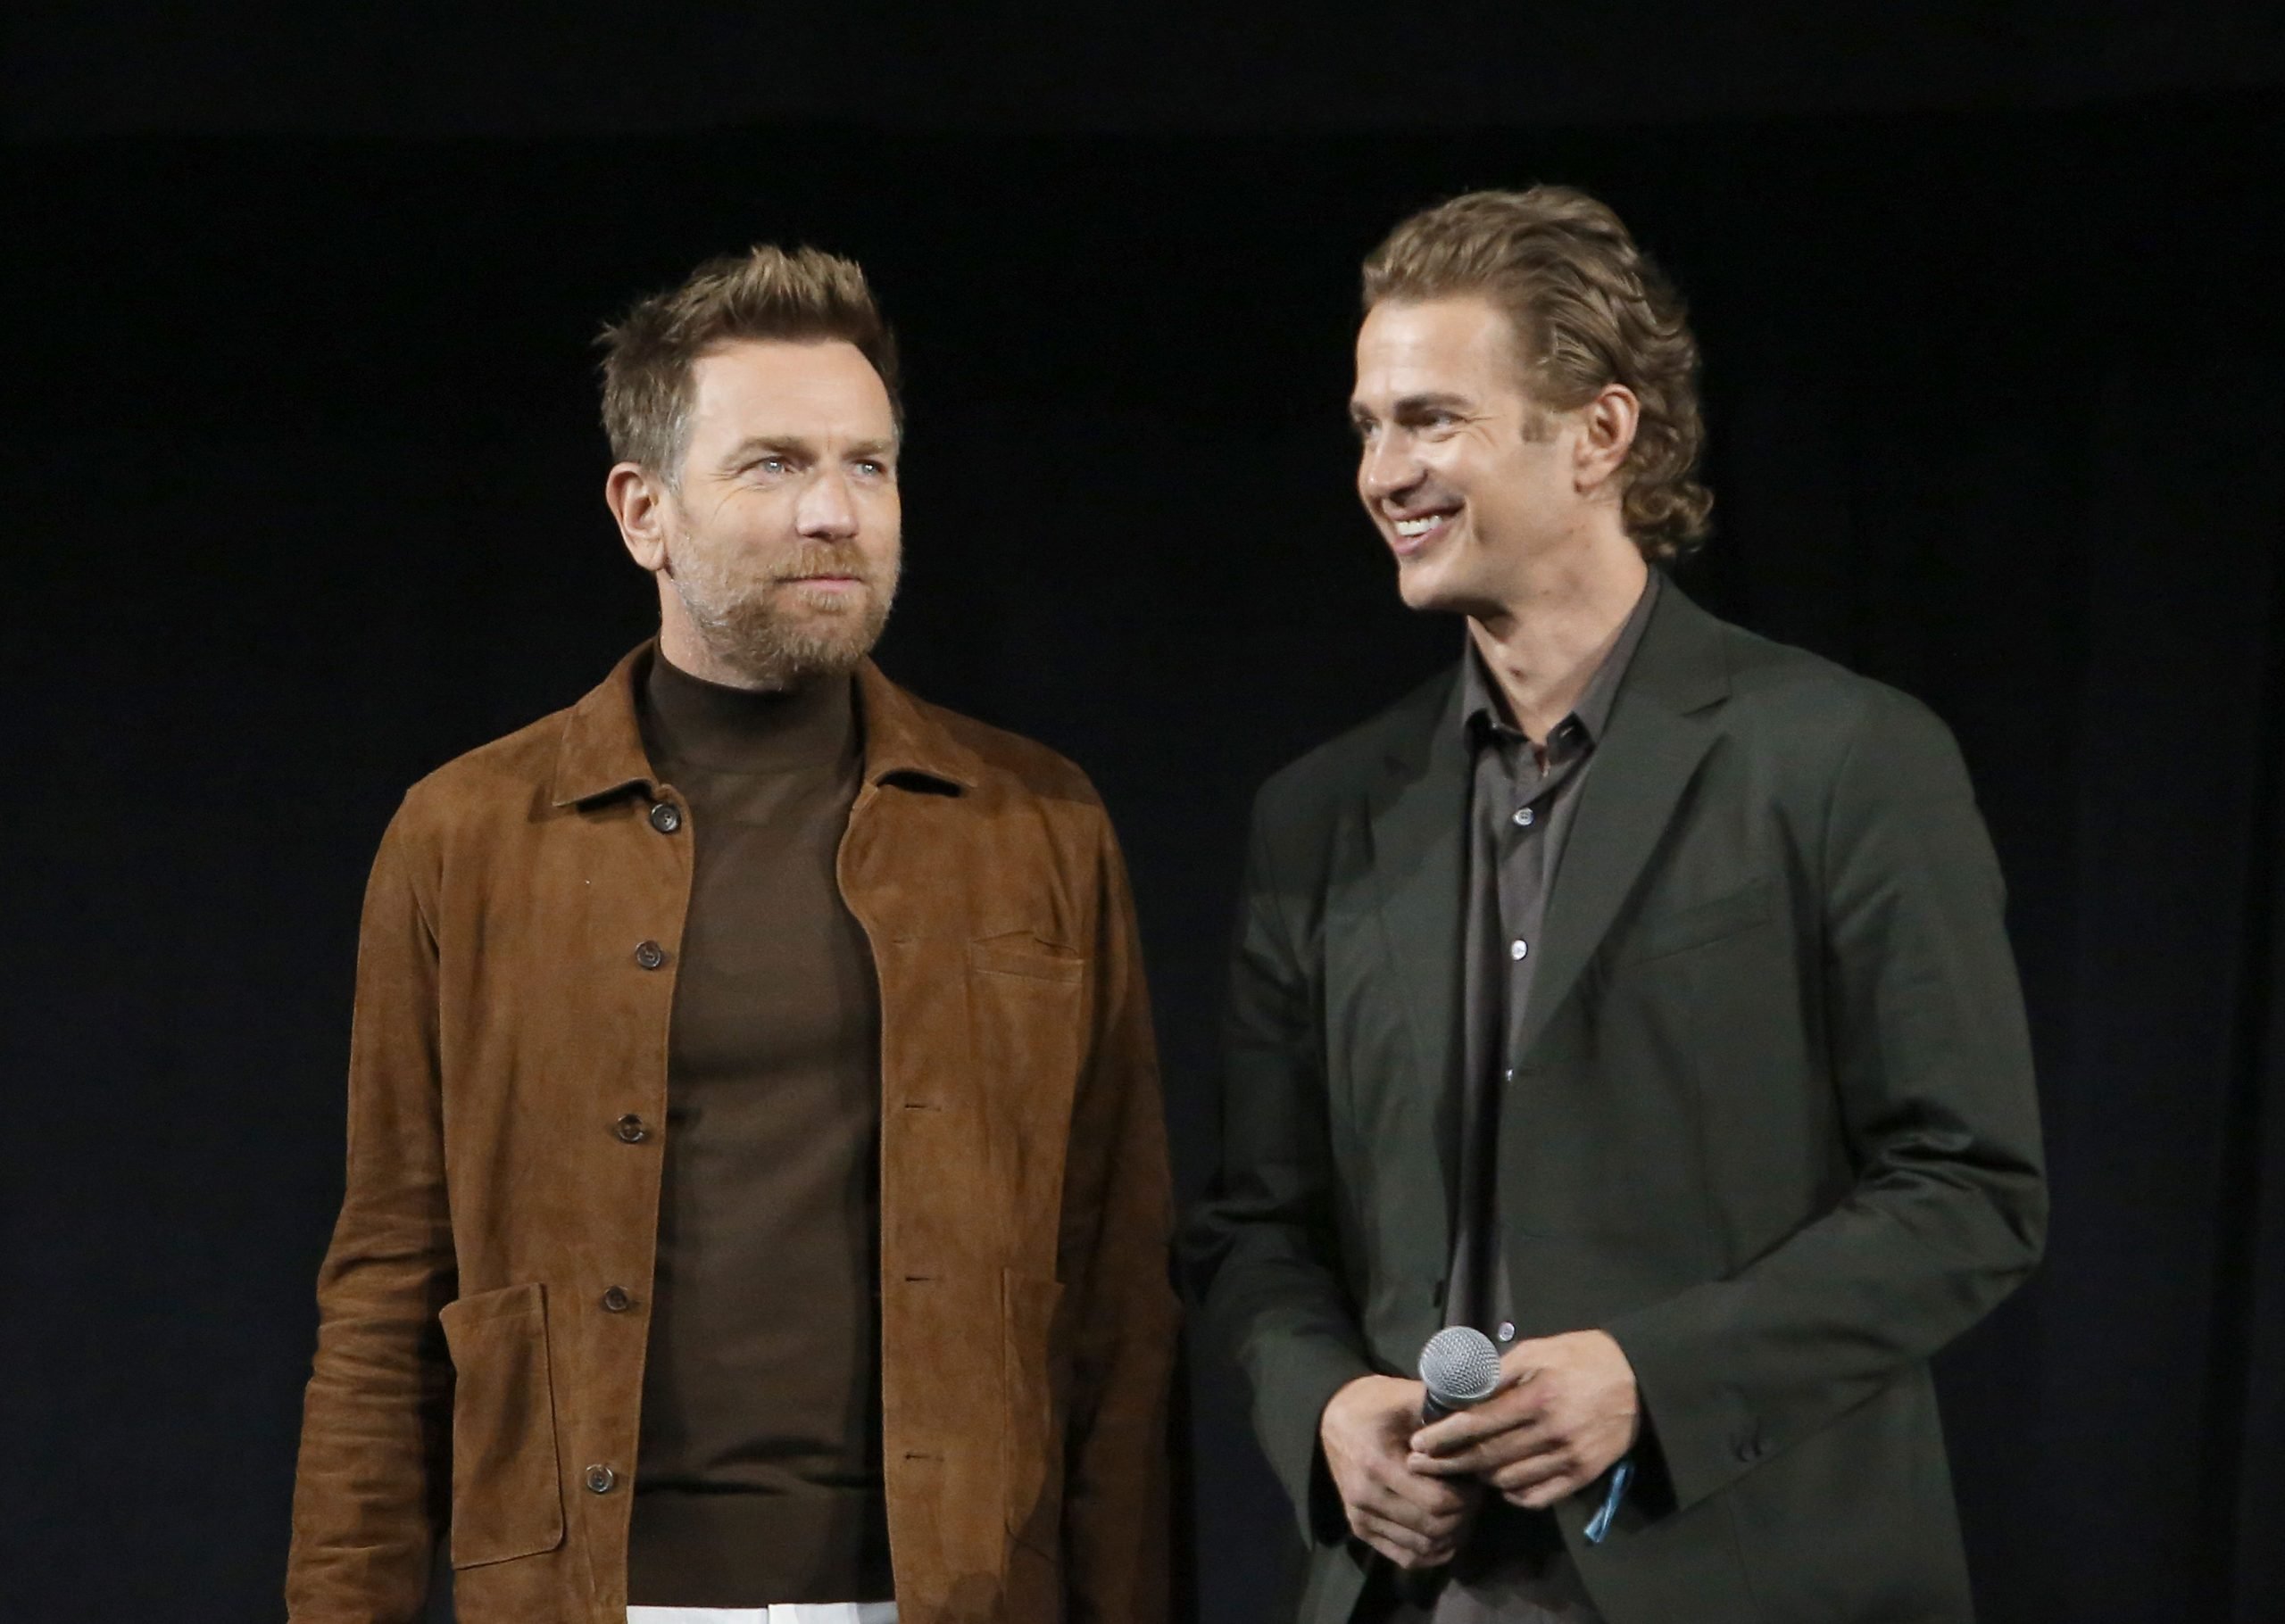 Prequels actors Ewan McGregor and Hayden Christensen attend Star Wars celebration 2022 in Anaheim